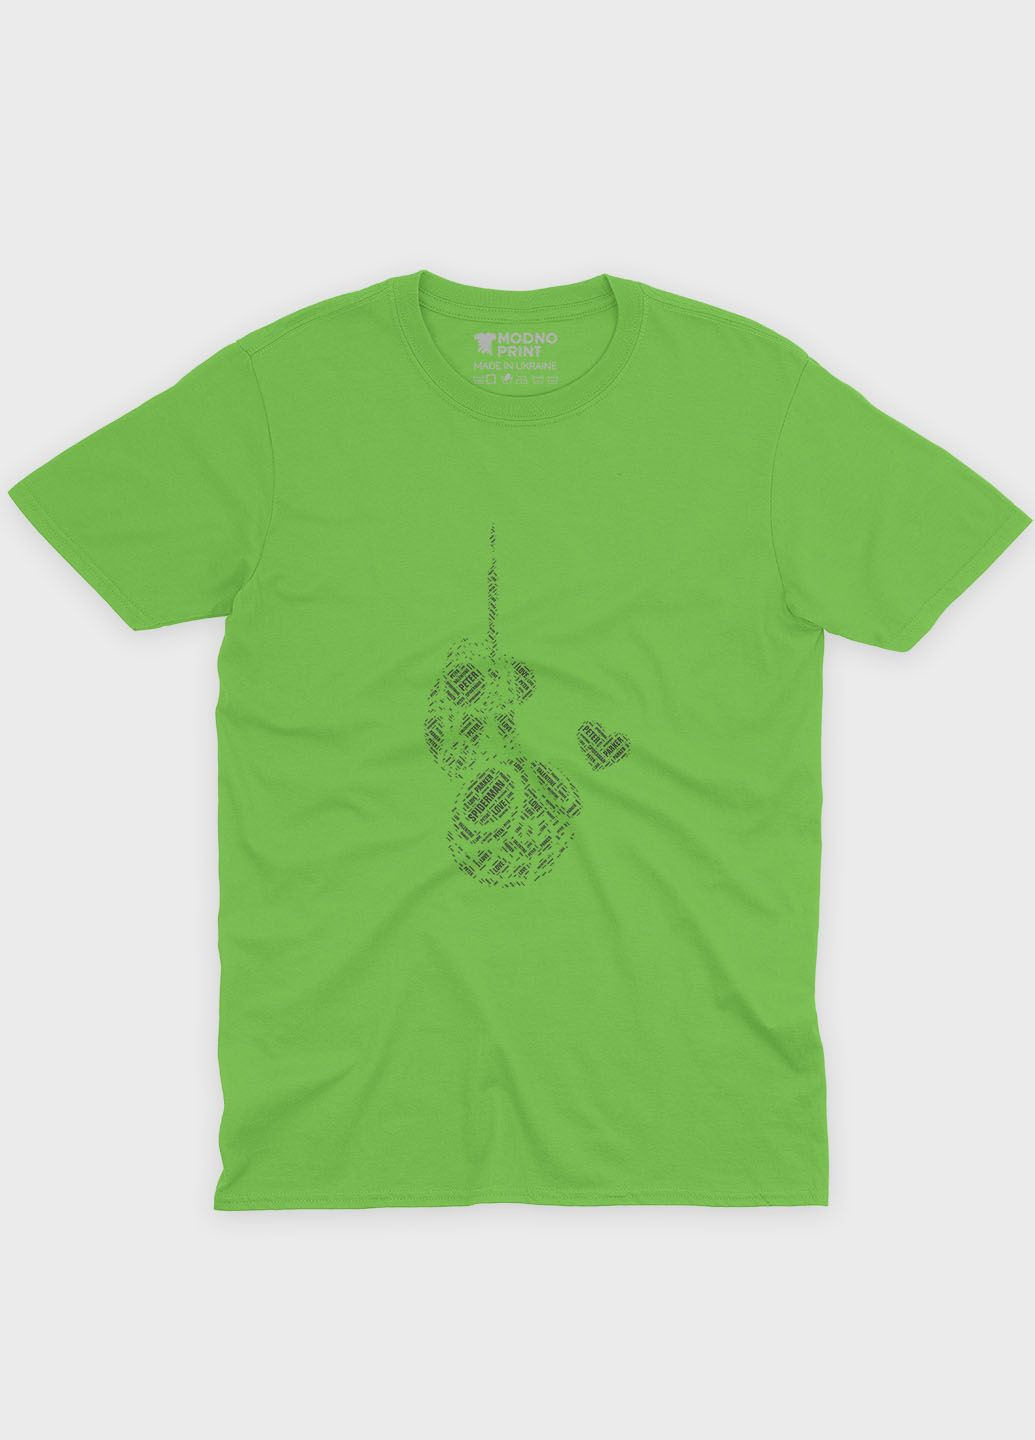 Салатова демісезонна футболка для хлопчика з принтом супергероя - людина-павук (ts001-1-kiw-006-014-001-b) Modno